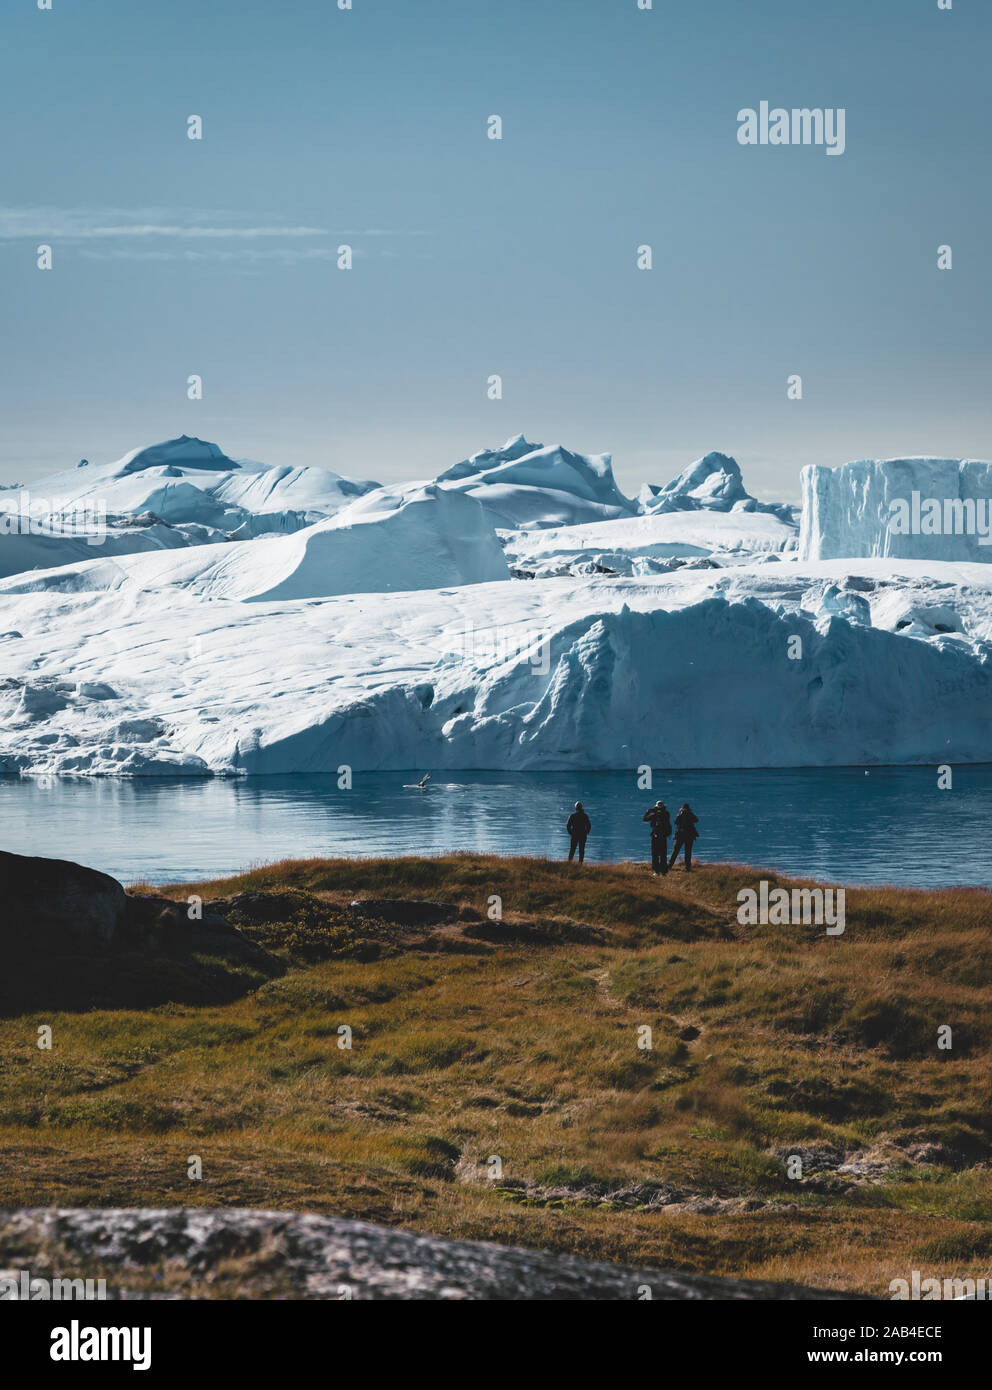 3 Personen genommen Foto von Buckelwal in Ilulissat tauchen in Grönland. Leichte Wanderungen auf dem Weg zur berühmten Kangia Gletscher in der Nähe von Ilulissat auf Grönland Stockfoto